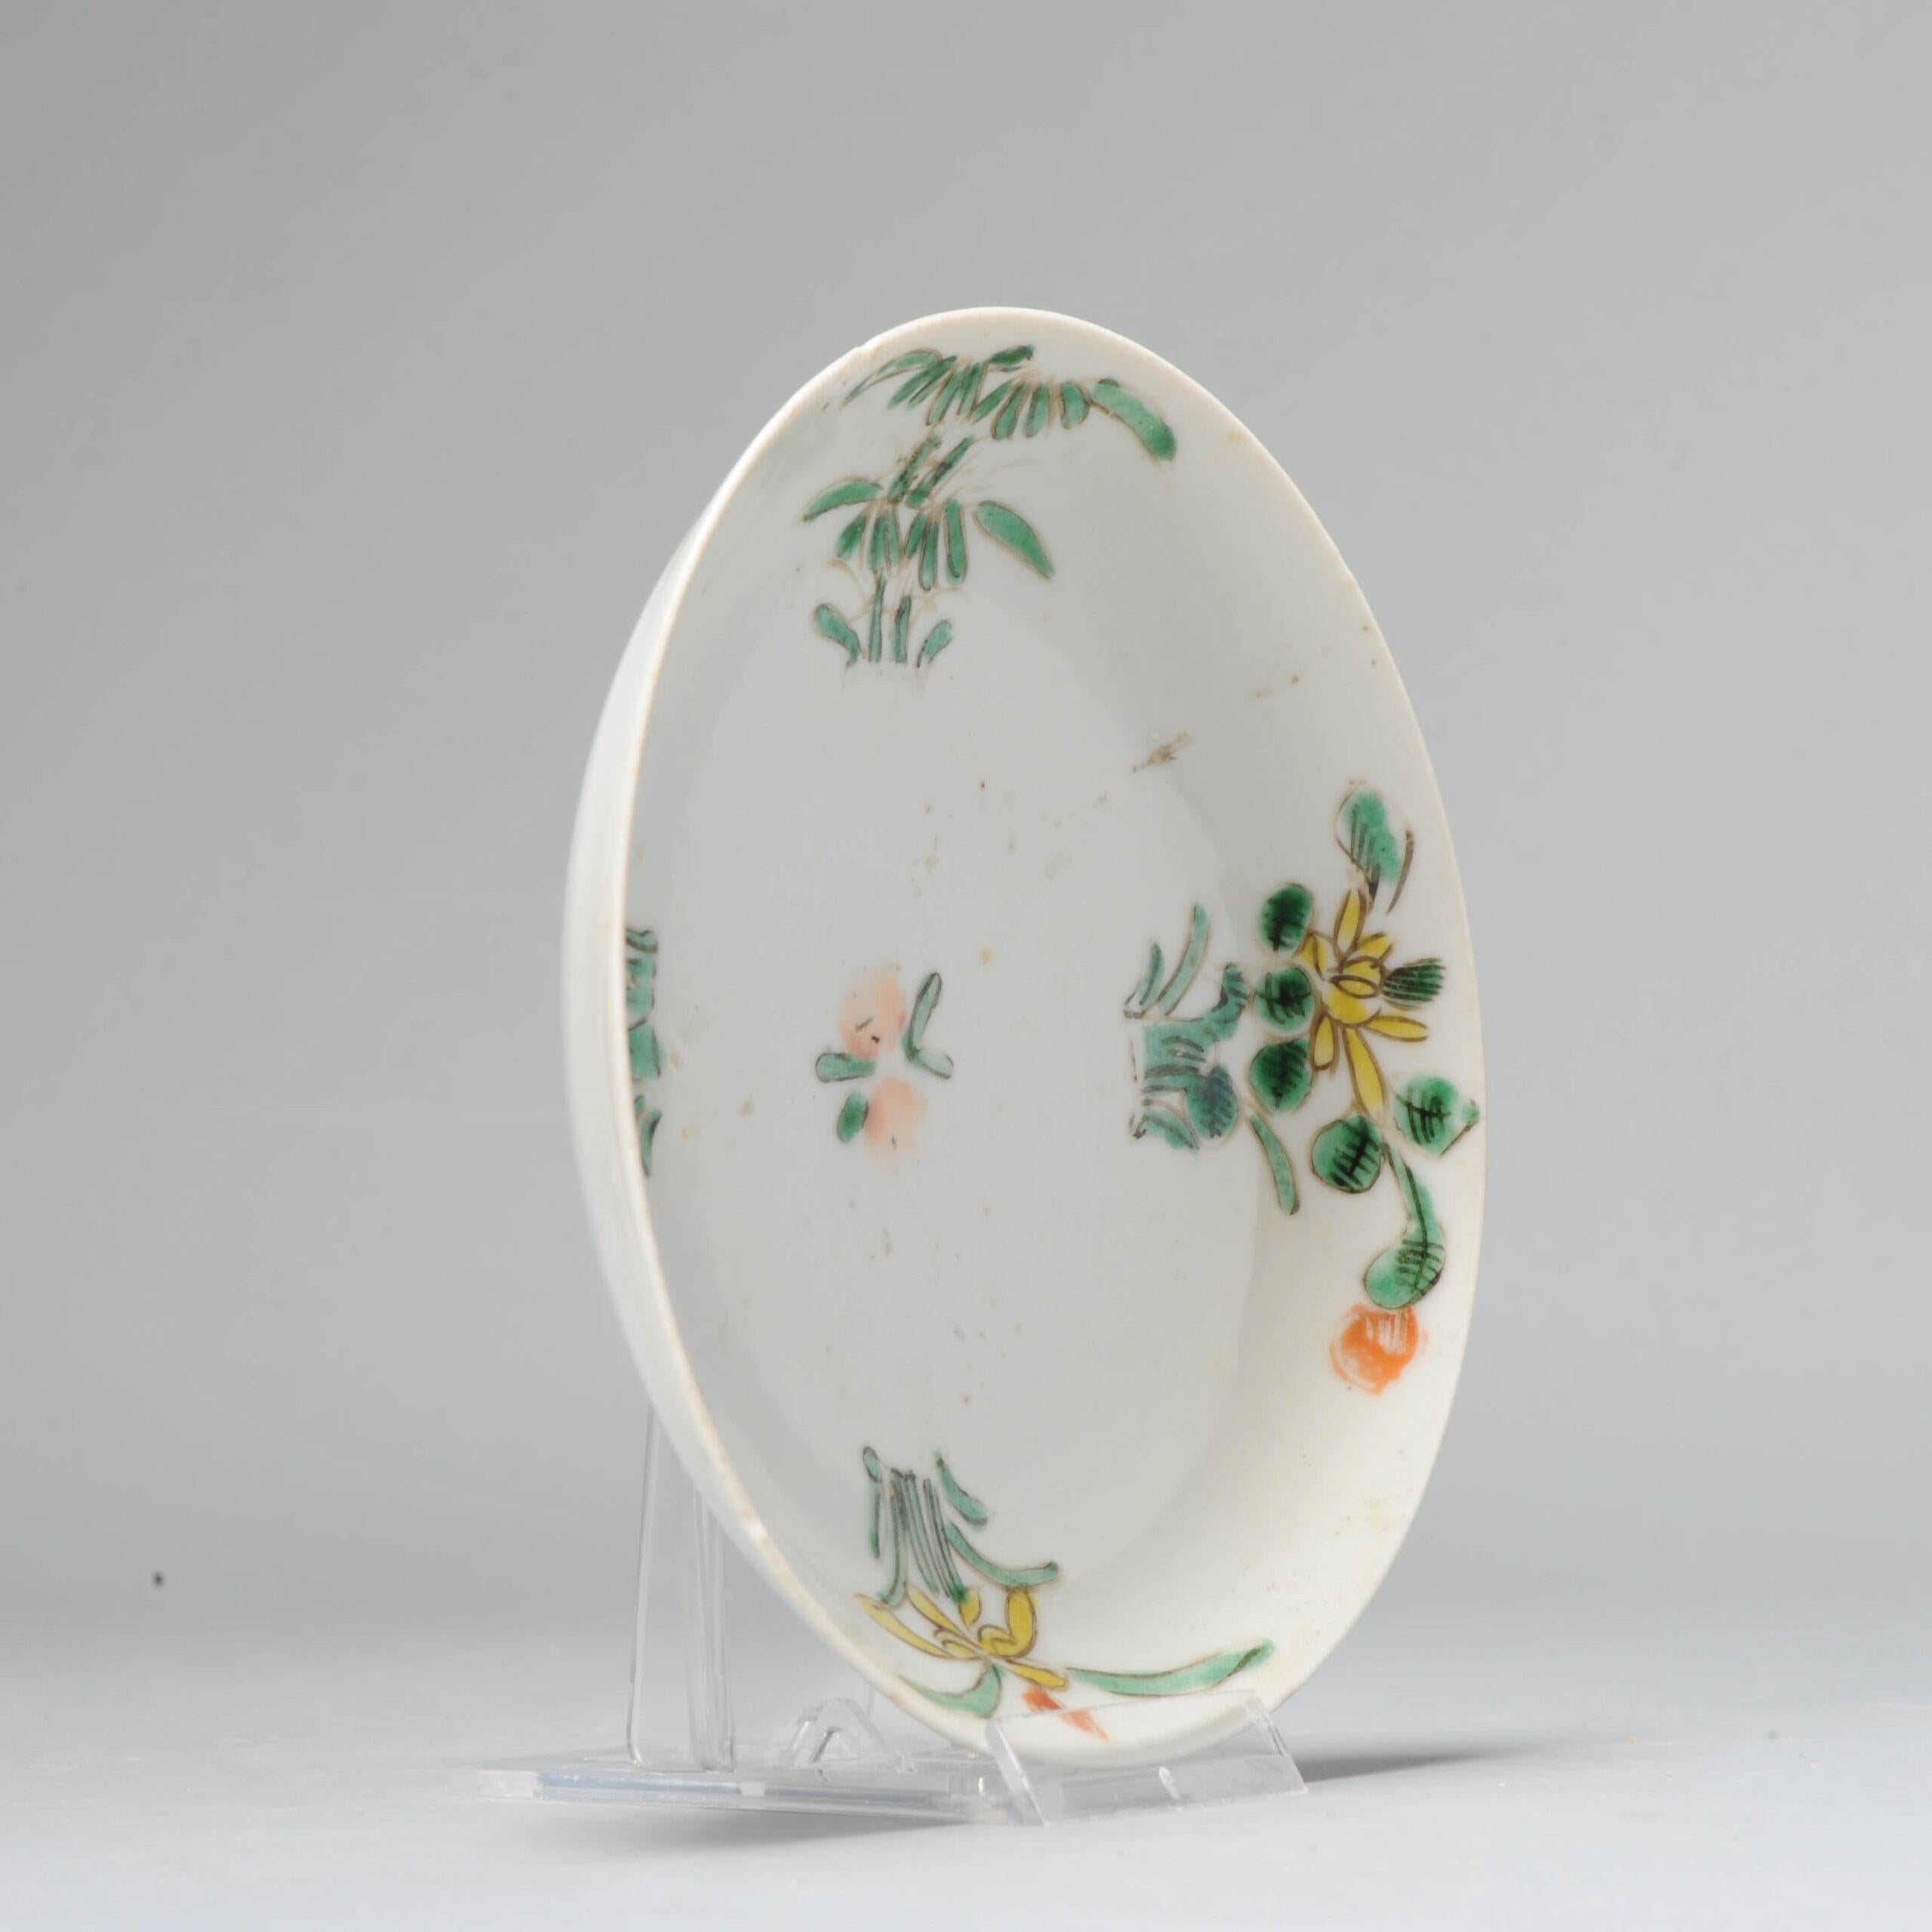 Wir präsentieren eine exquisite Schale aus dem frühen 17. Jahrhundert aus Jingdezhen, die für den japanischen Markt hergestellt wurde. Dieses atemberaubende Stück zeigt das Ko-Akae-Dekor mit überglasierten Blumen aus Emaille.

Zusätzliche